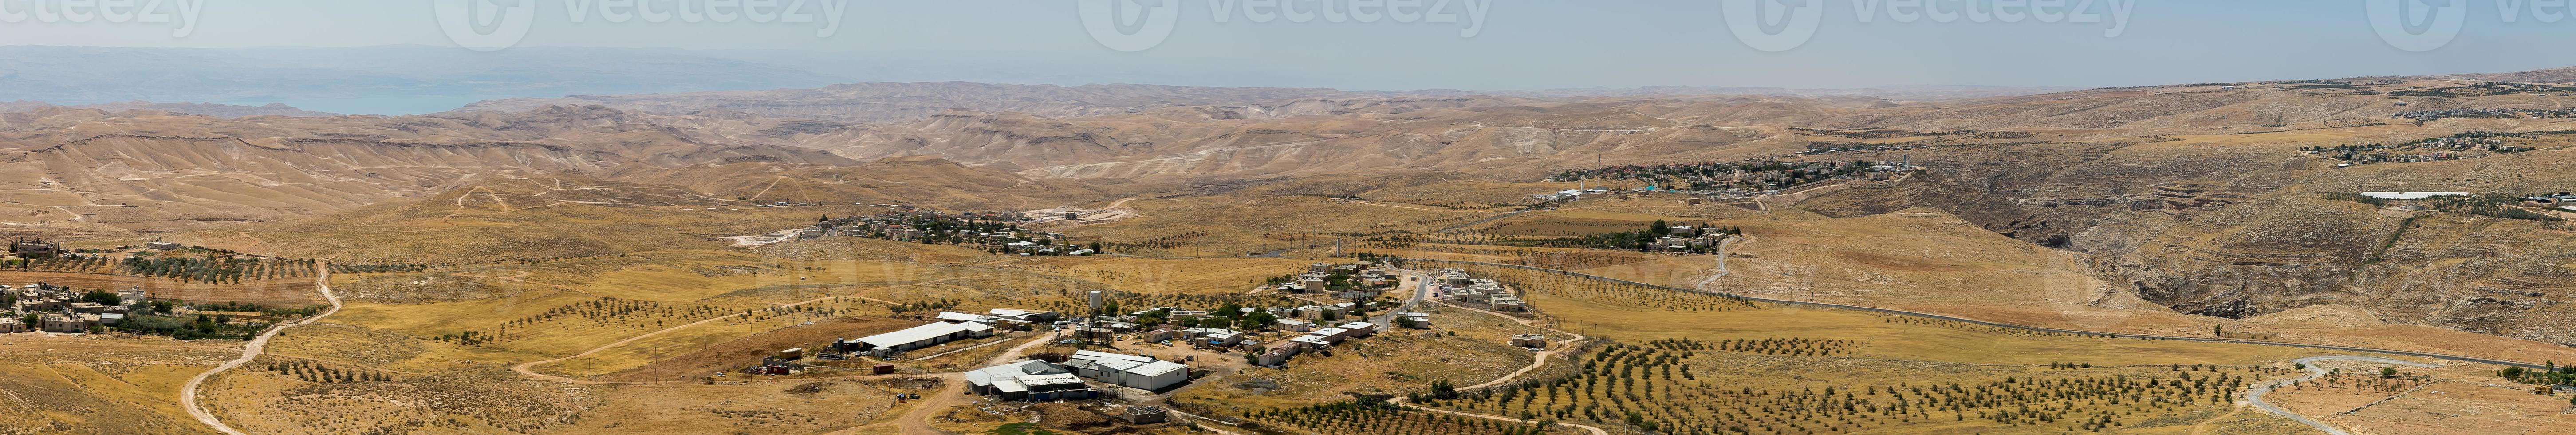 paesaggio in israele foto